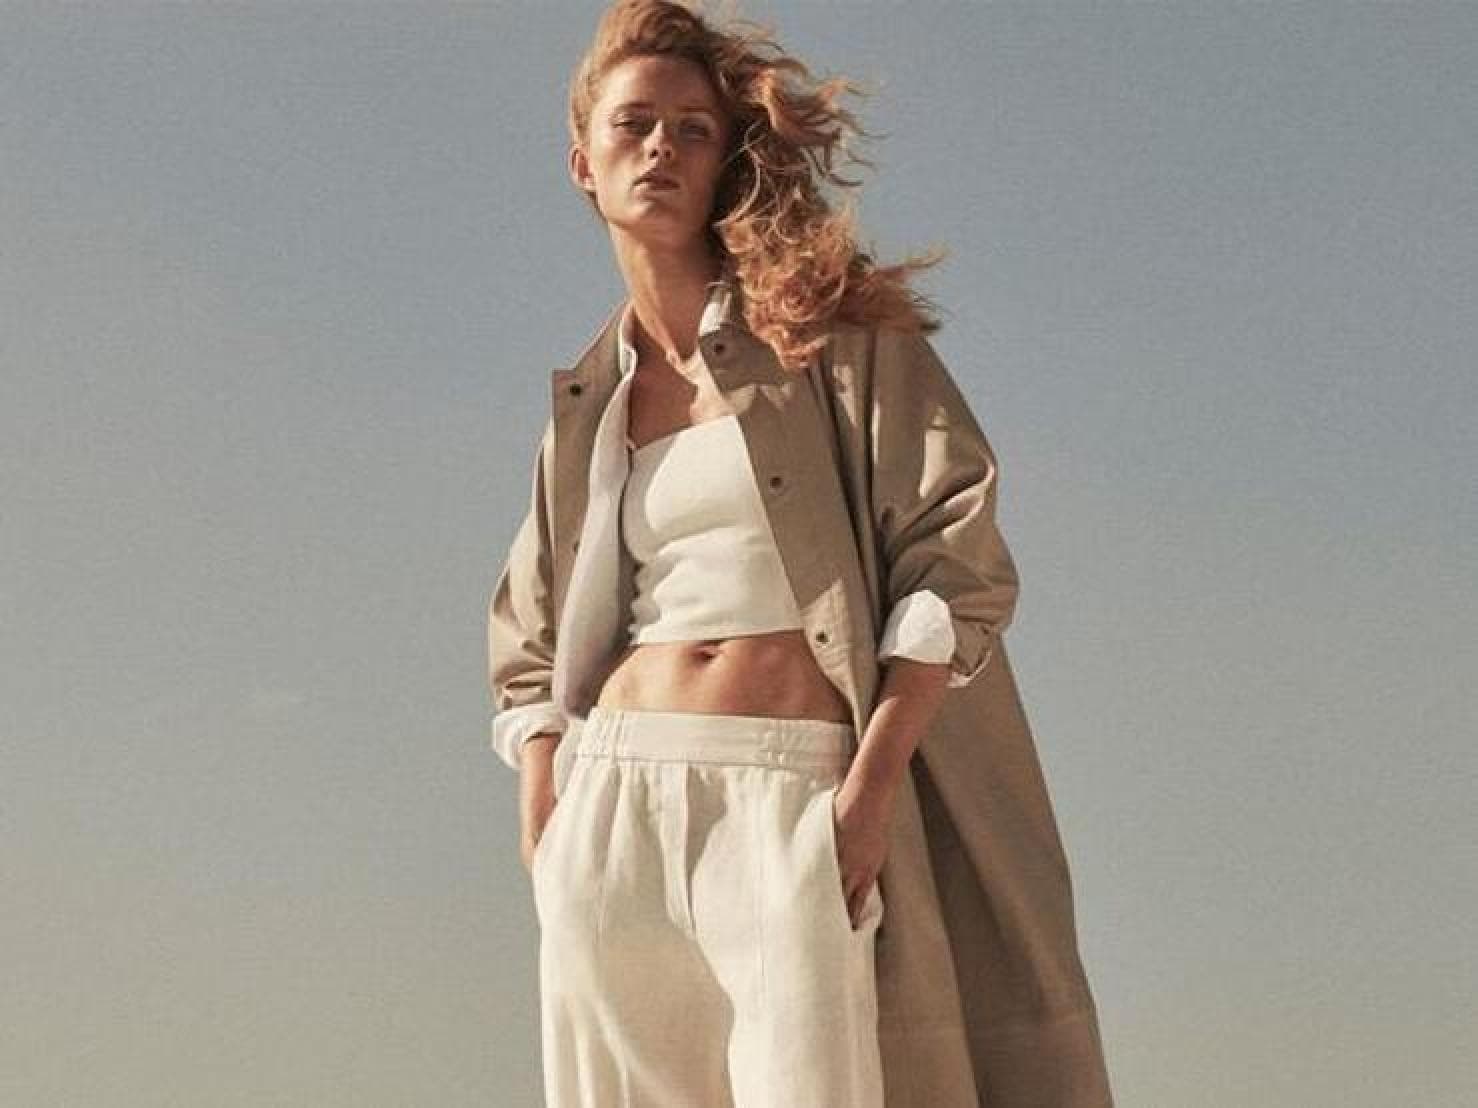 Fotos: Siete pantalones lino de Massimo Dutti perfectos para ir a trabajar en los días más calurosos | Mujer Hoy